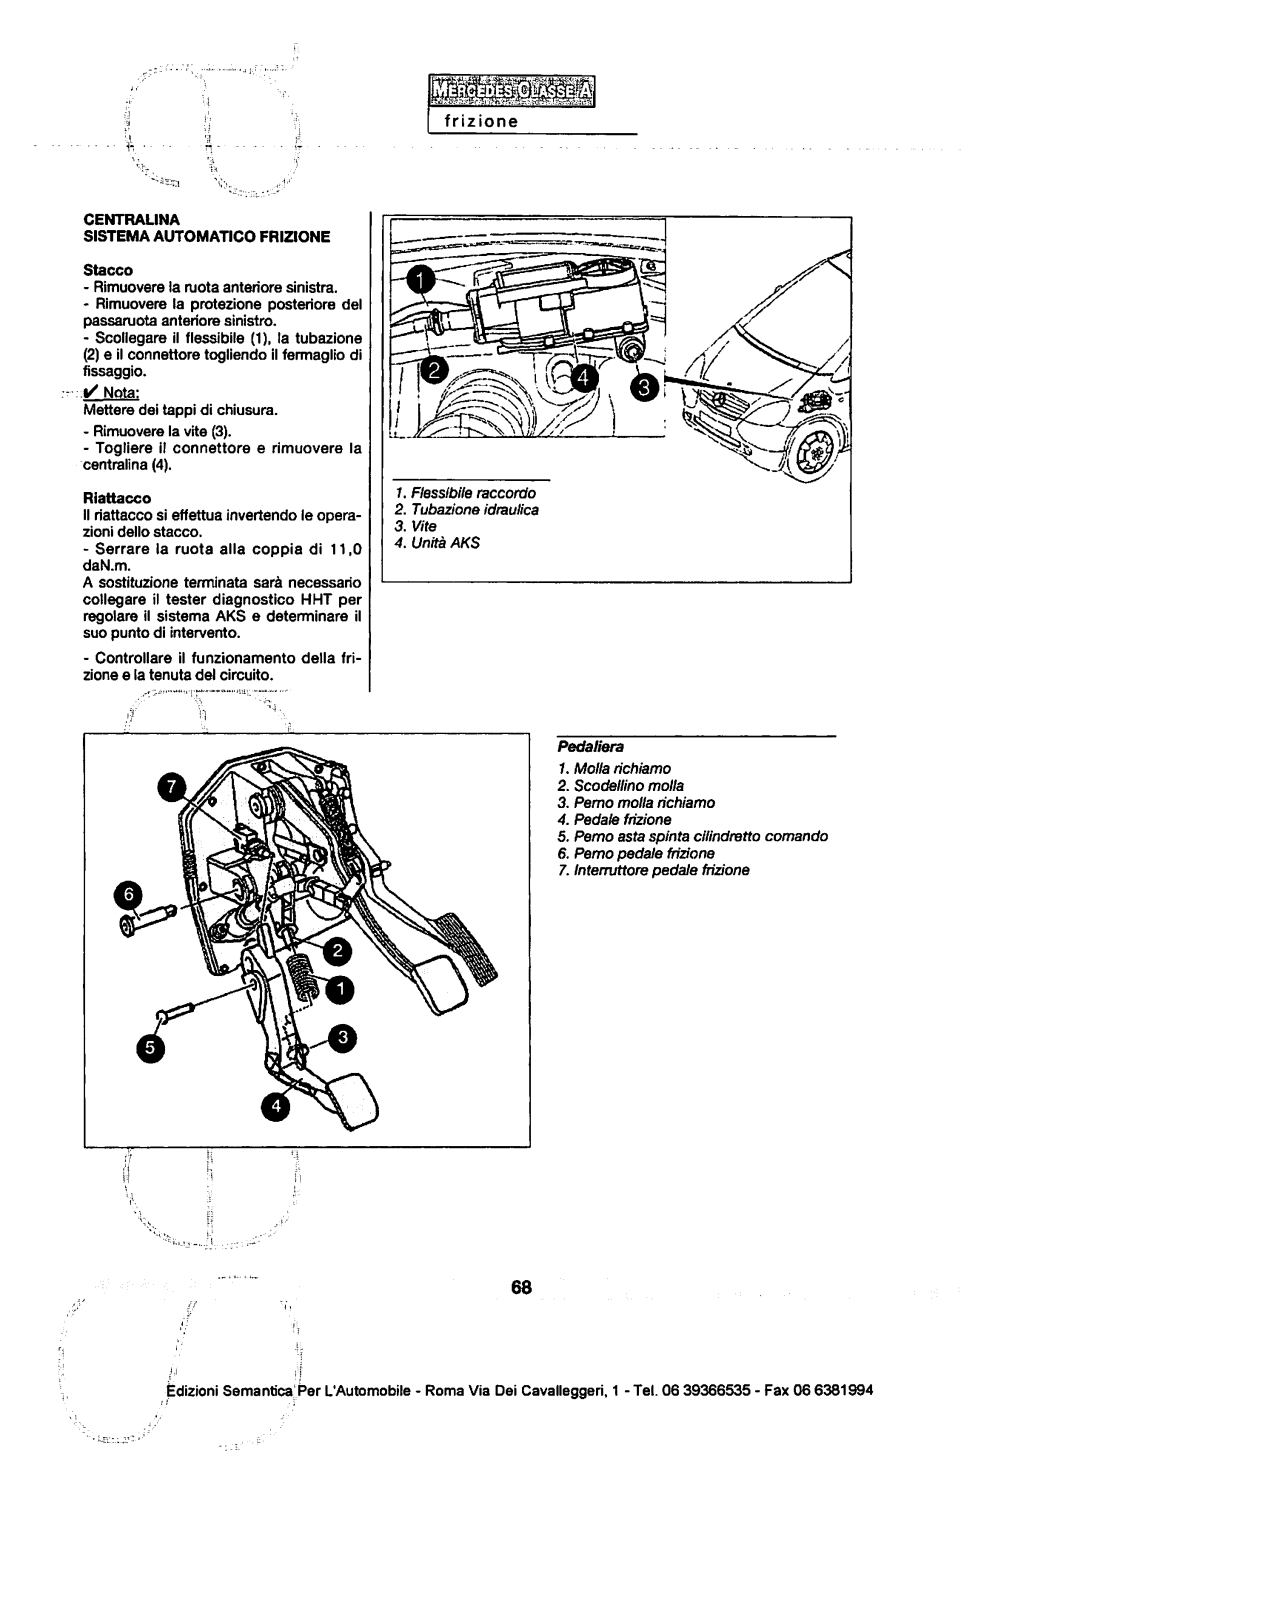 w168 - (W168): Manual técnico - tudo sobre - 1997 a 2004 - italiano 1z3s8kl